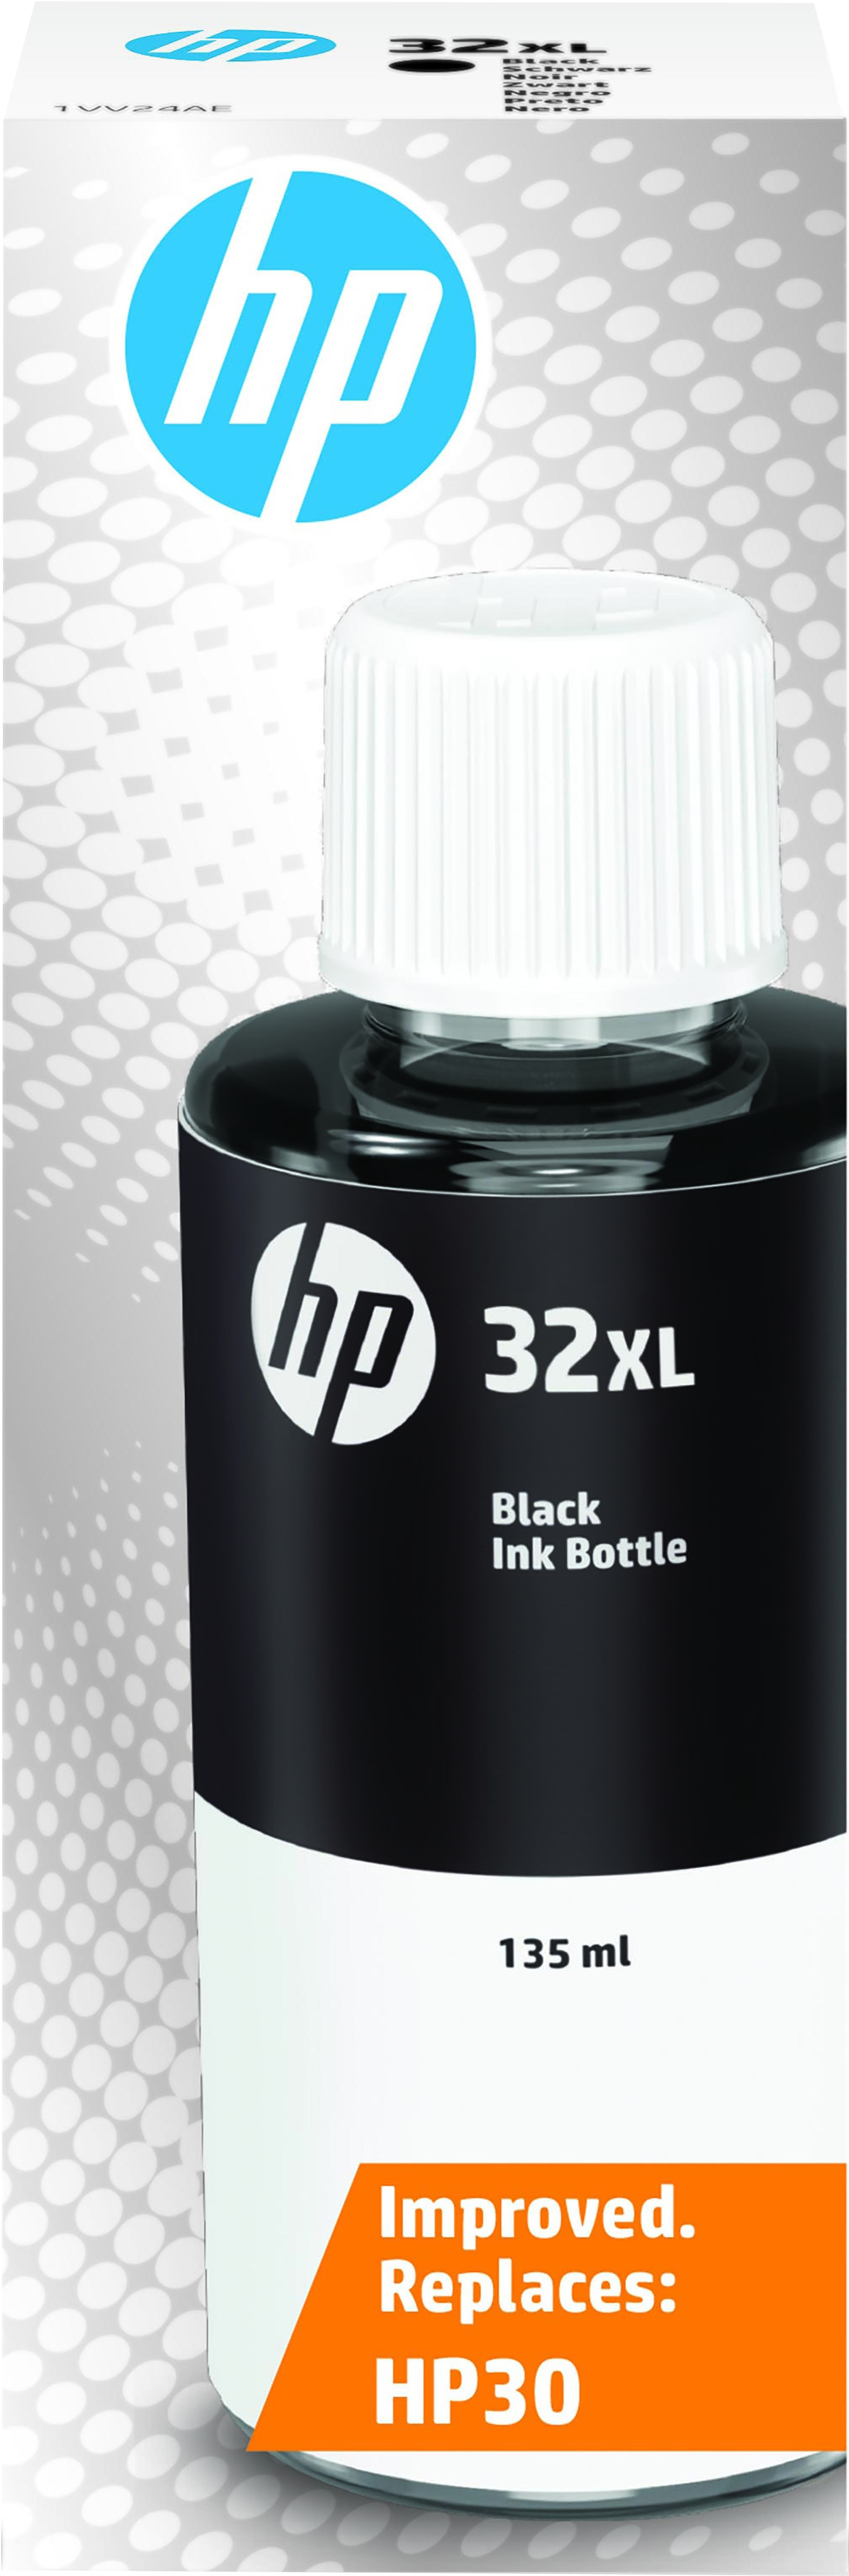 HP 32xl zwart Inkt aanbieding